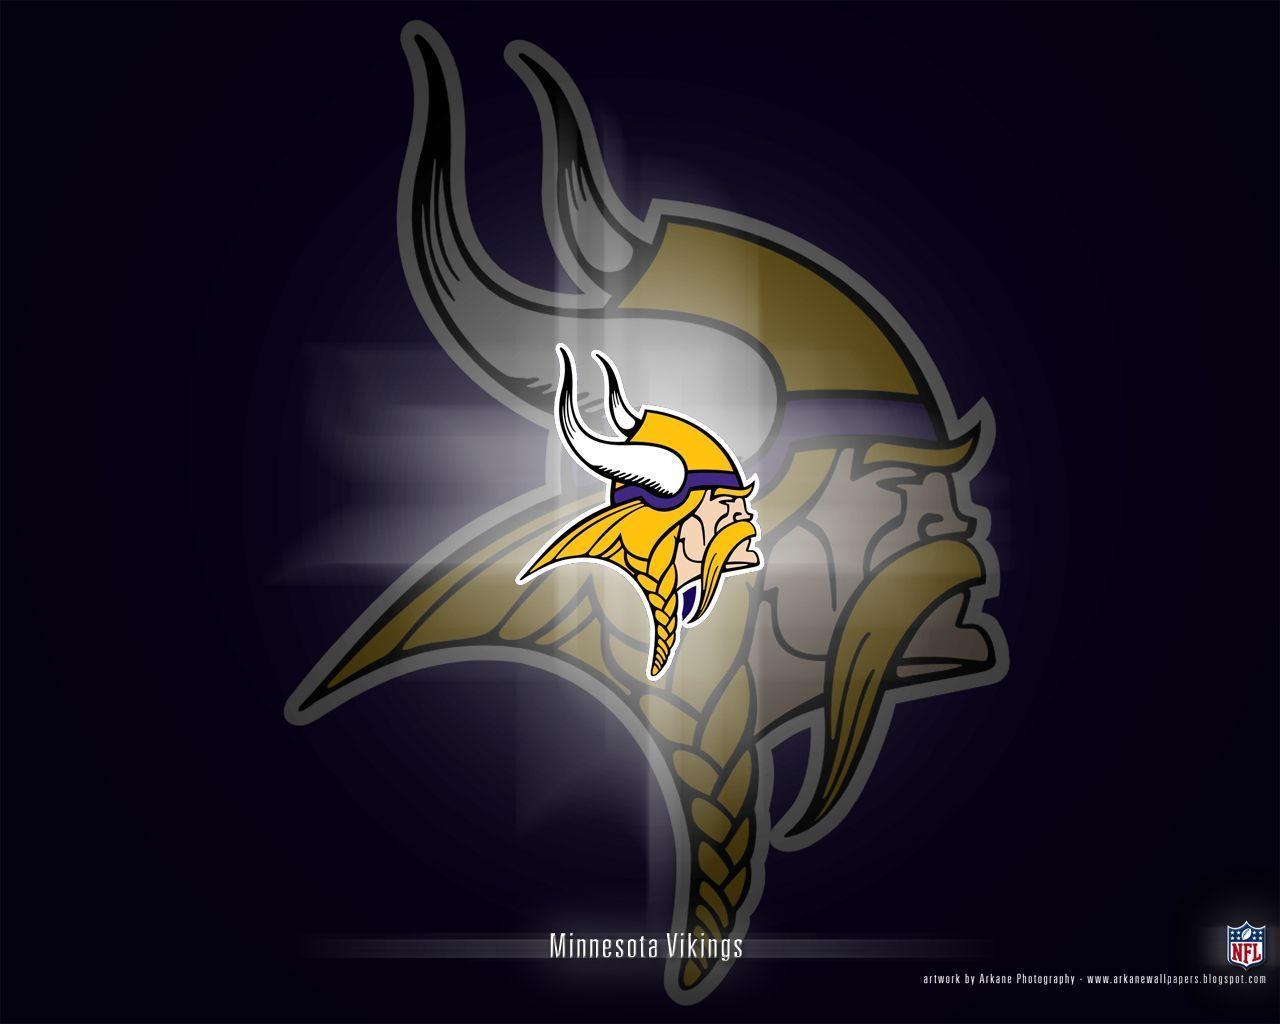 Minnesota Vikings Day 2 2014 Nfl Draft Primer